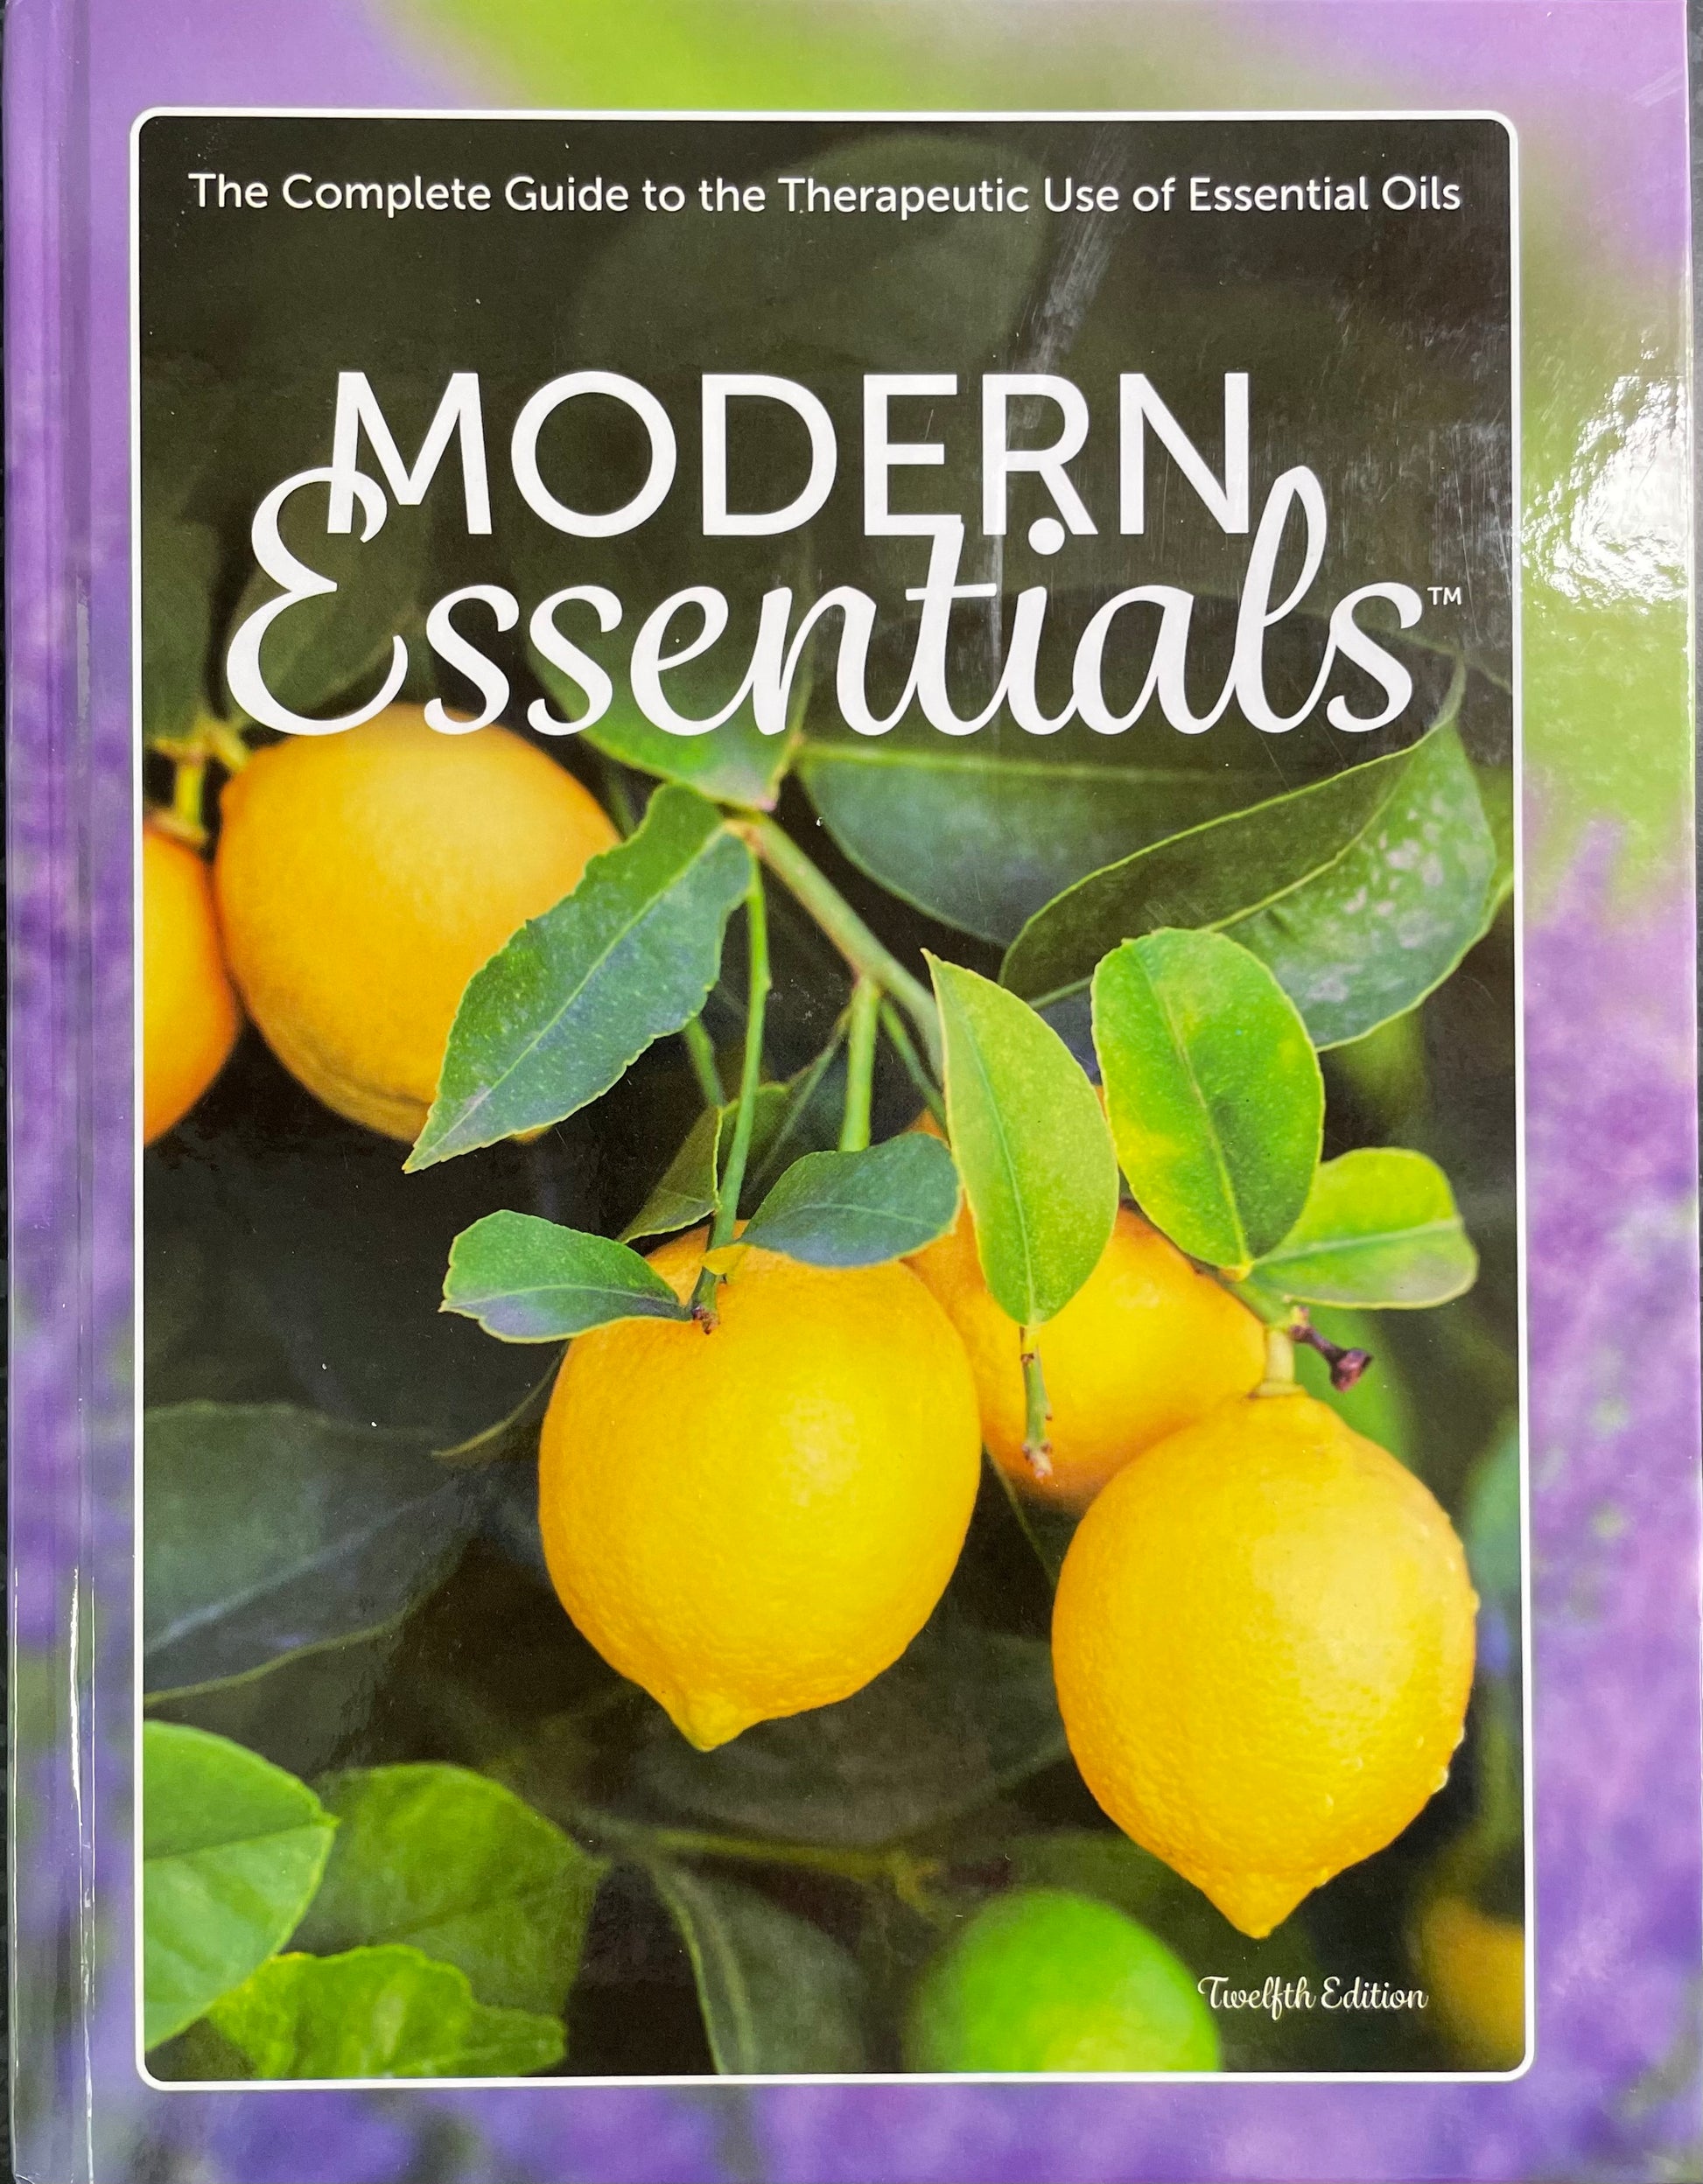 Modern Essentials Book - 12th Edition – Green Mandarin NZ